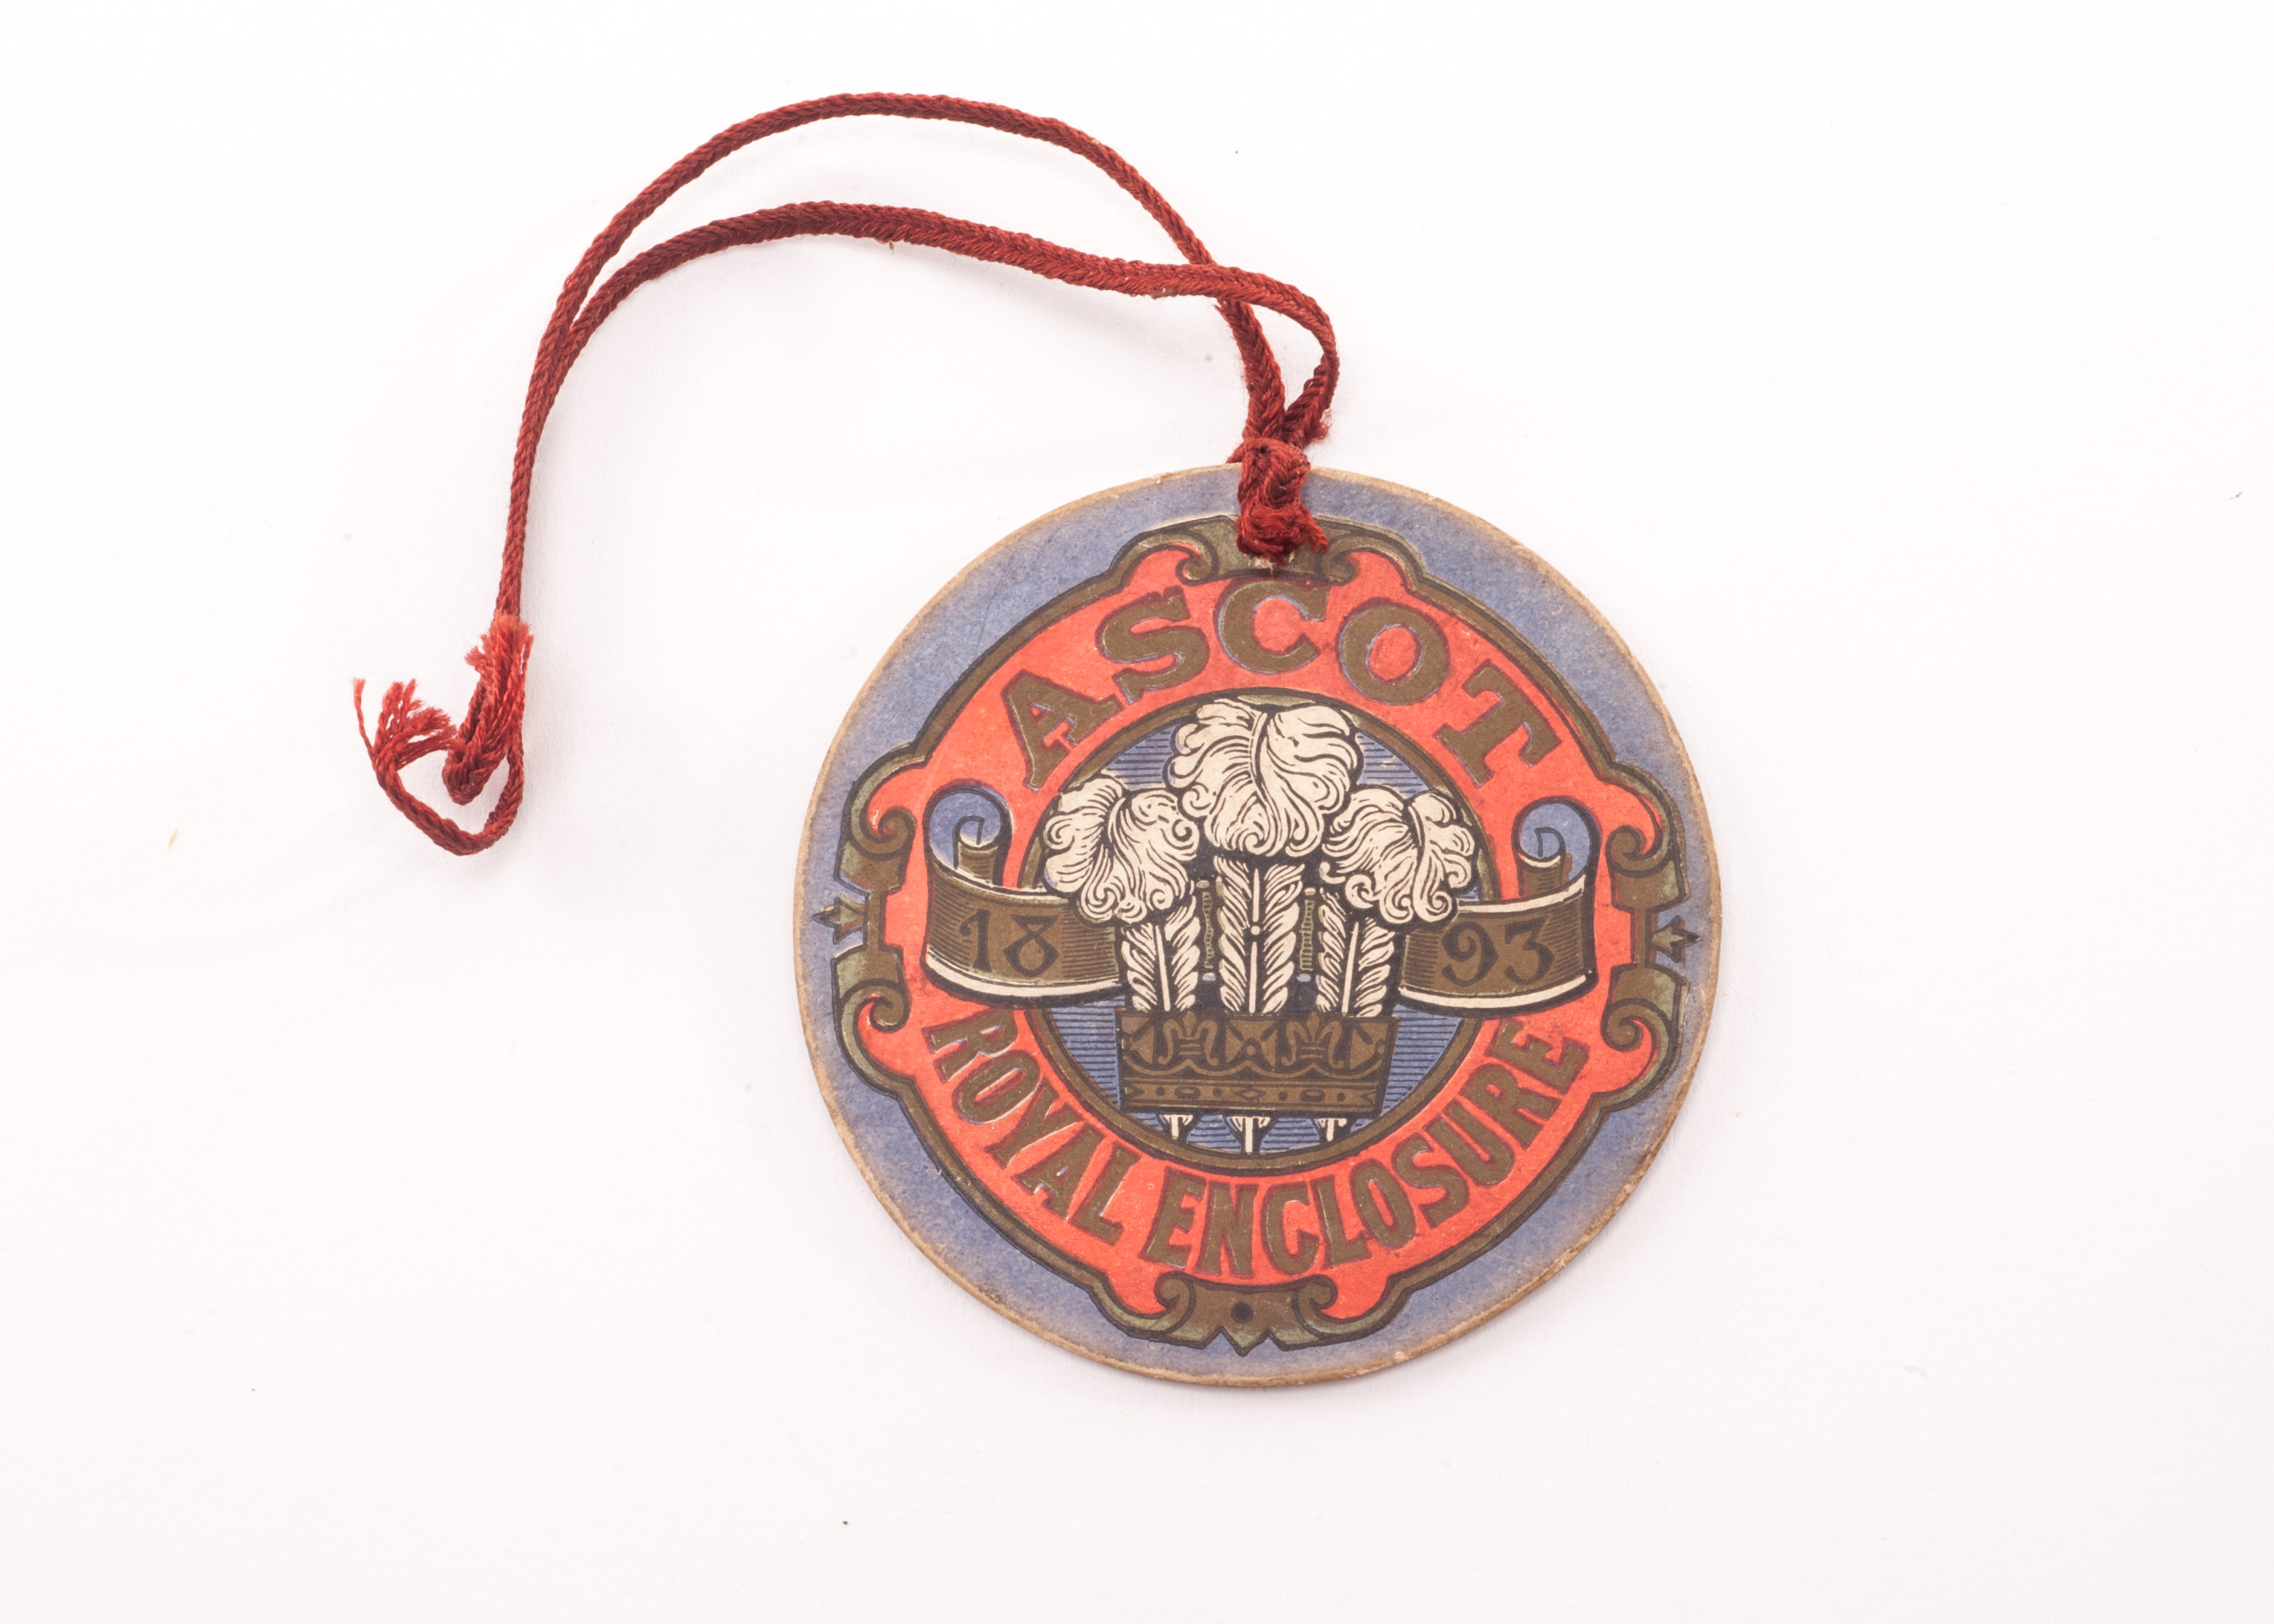 Horseracing: Royal Ascot Royal Enclosure badge, circular card badge with red cord, dated 1893 to